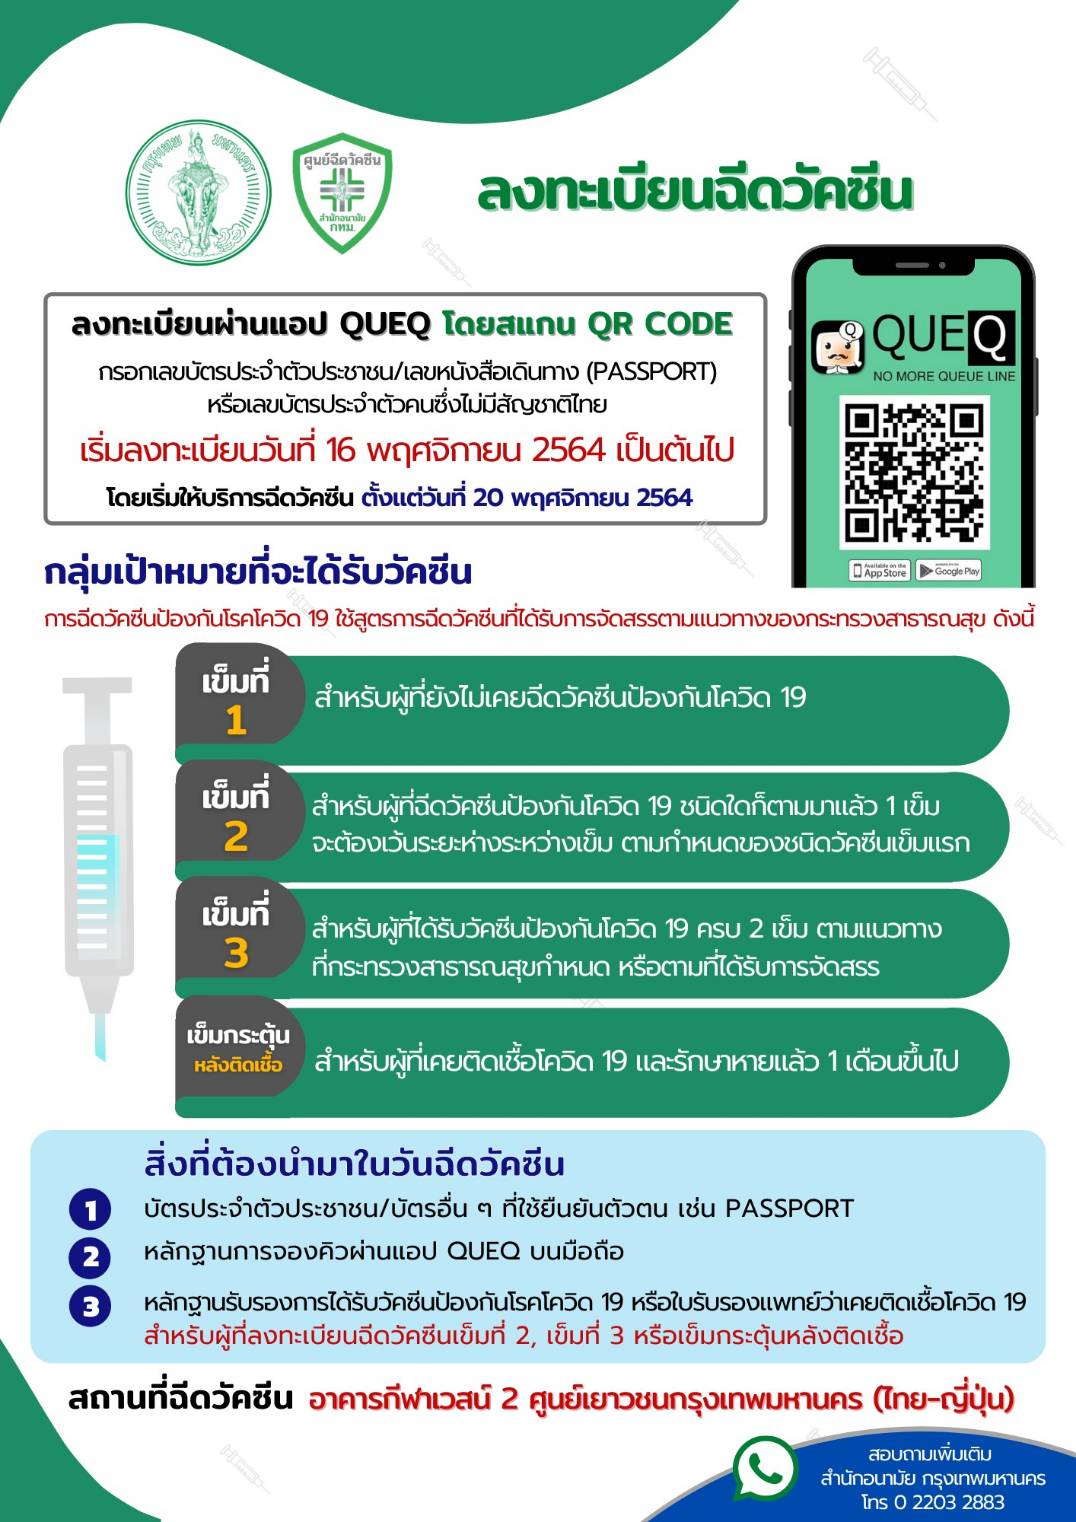 กทม.เปิดศูนย์ไทย-ญี่ปุ่น ฉีดวัคซีนโควิด ทุกกลุ่มทุกสัญชาติ